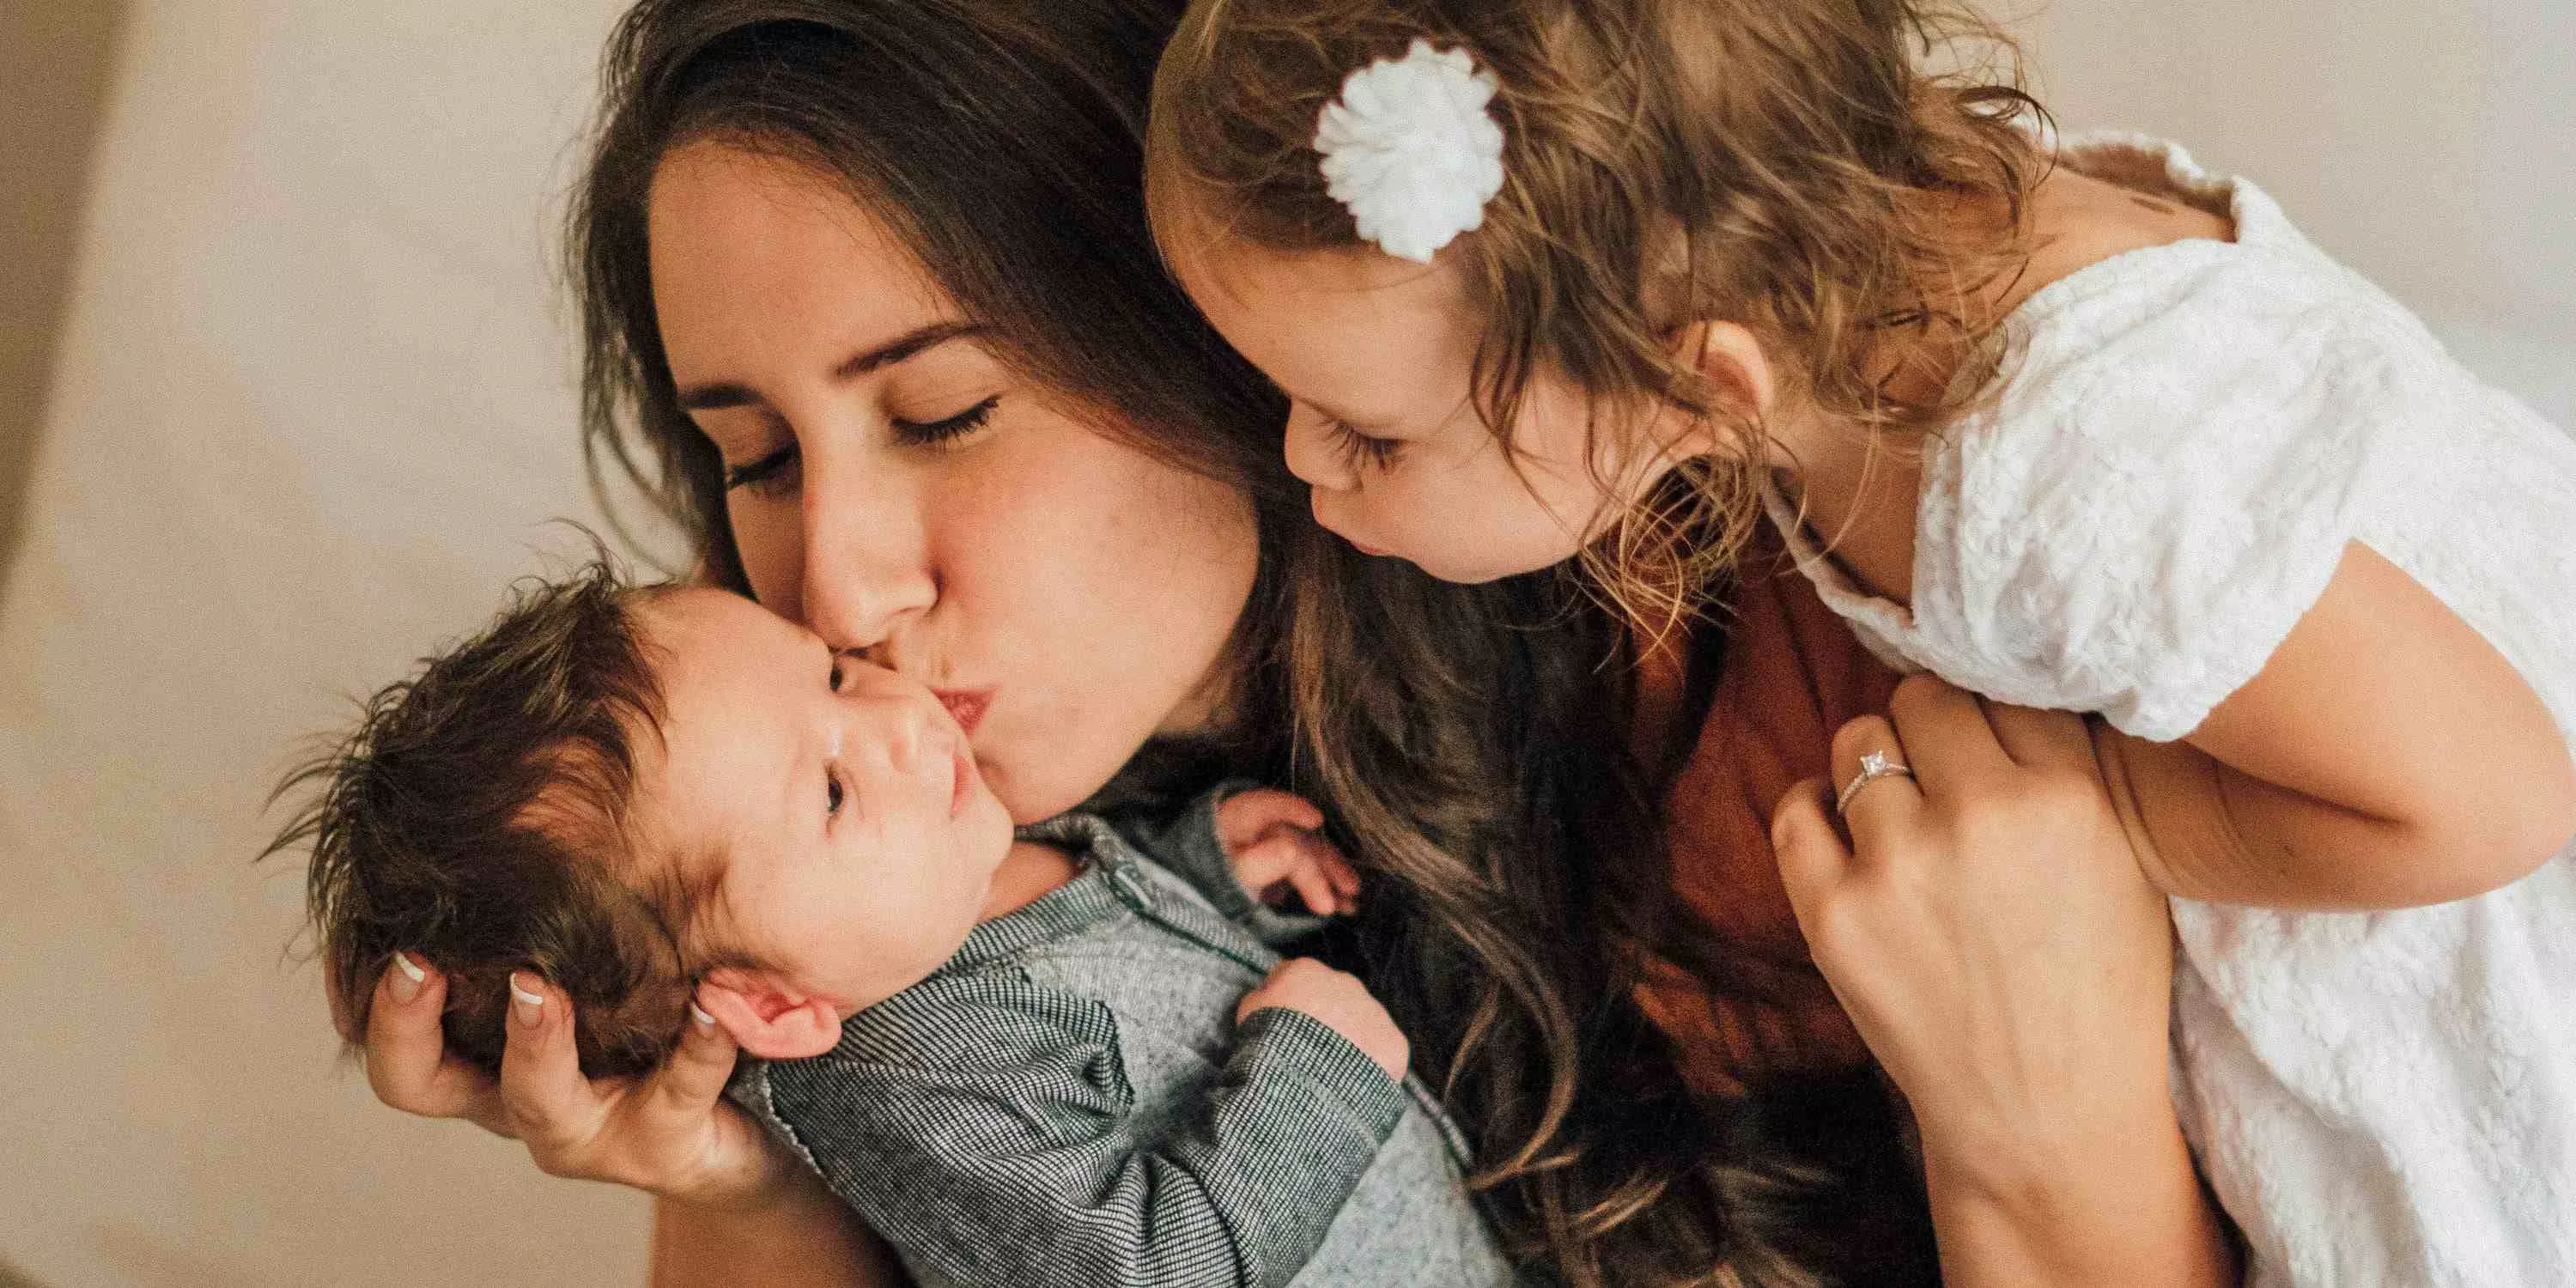 Mutter hält das Neugeborene im Arm und küsst es auf die Wange, das Geschwisterkind steht neben der Mutter und haucht dem Baby einen Kuss zu